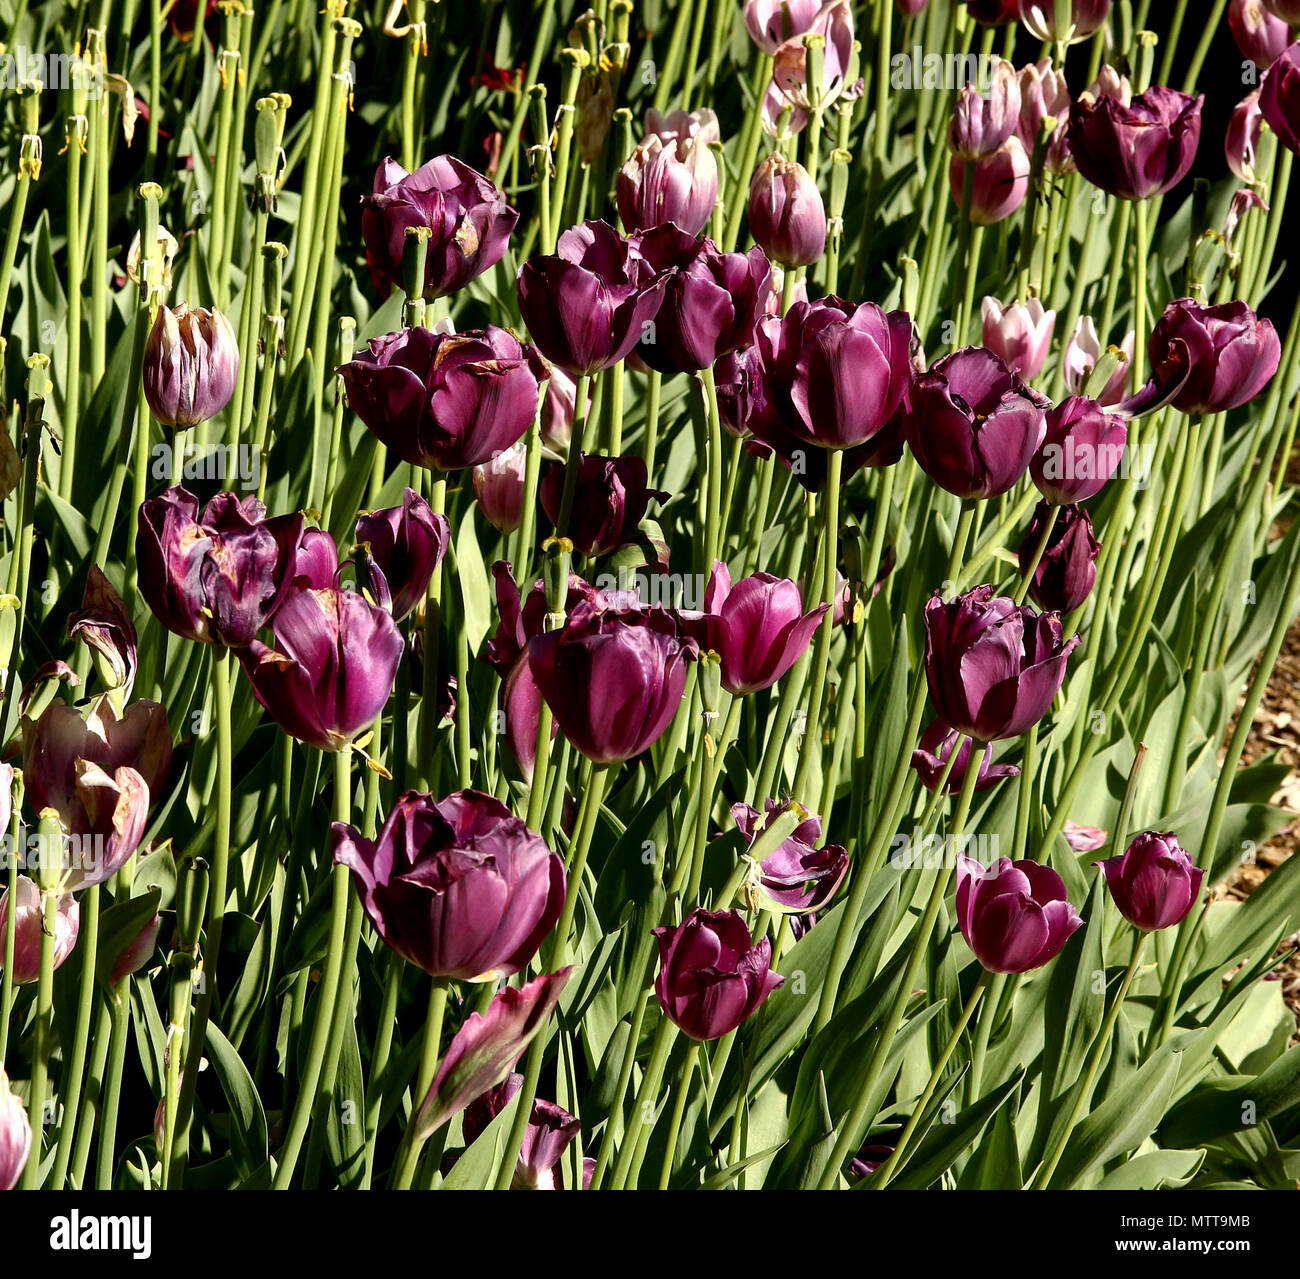 Tulipani viola con steli verdi Foto Stock